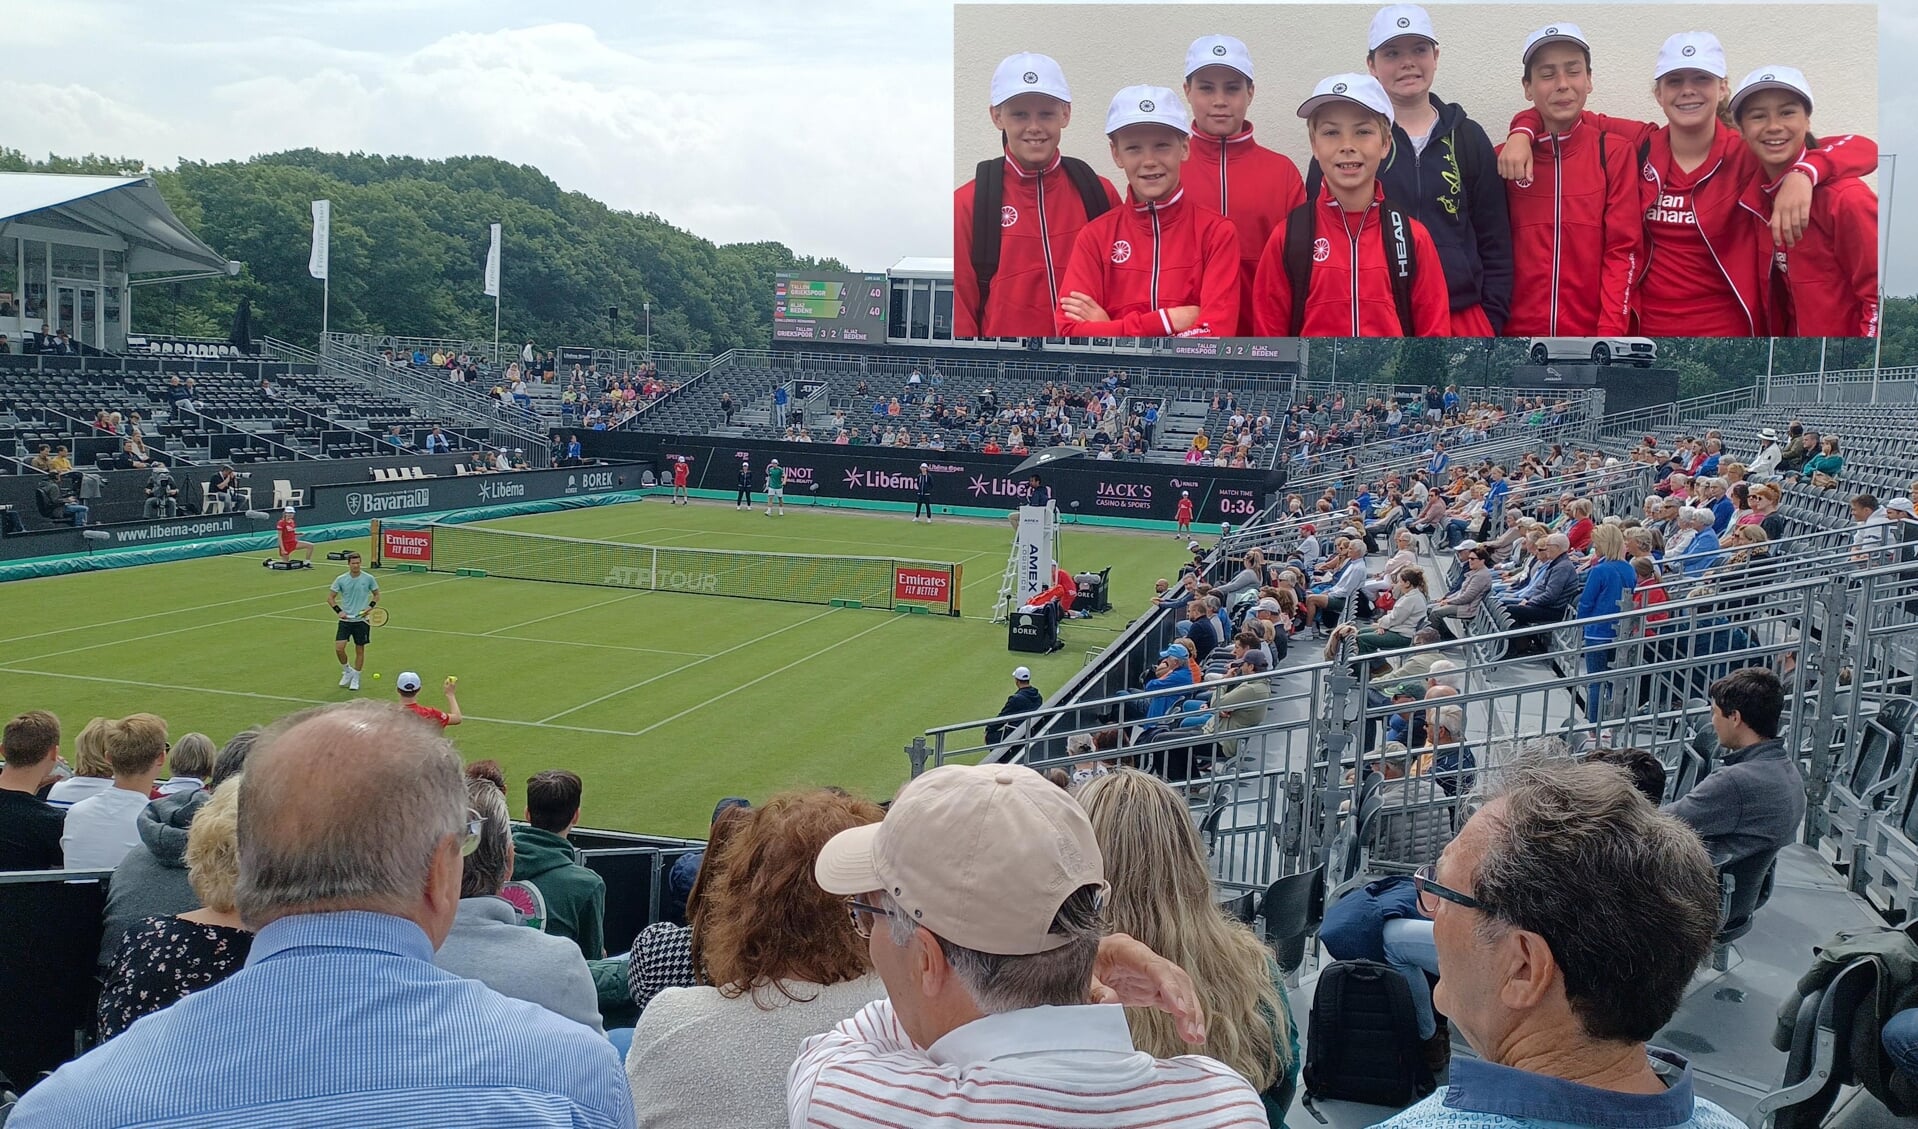 Ballenrapers Thos kijken hun ogen uit op tennistoernooi in Rosmalen